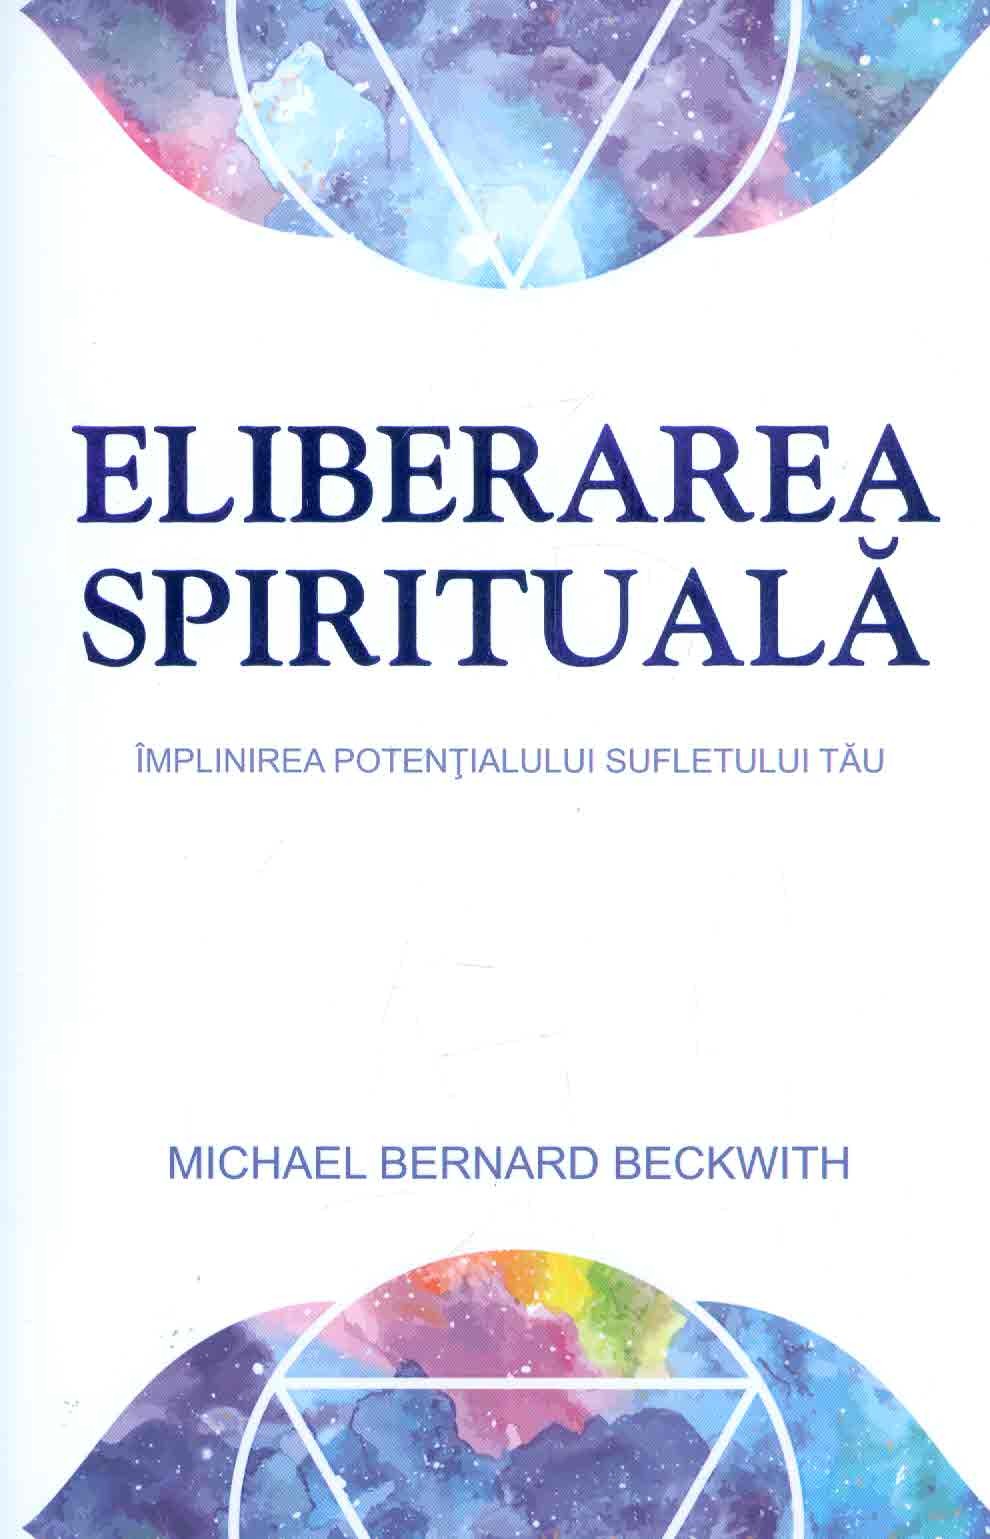 Eliberarea spirituala - Michael Bernard Beckwith